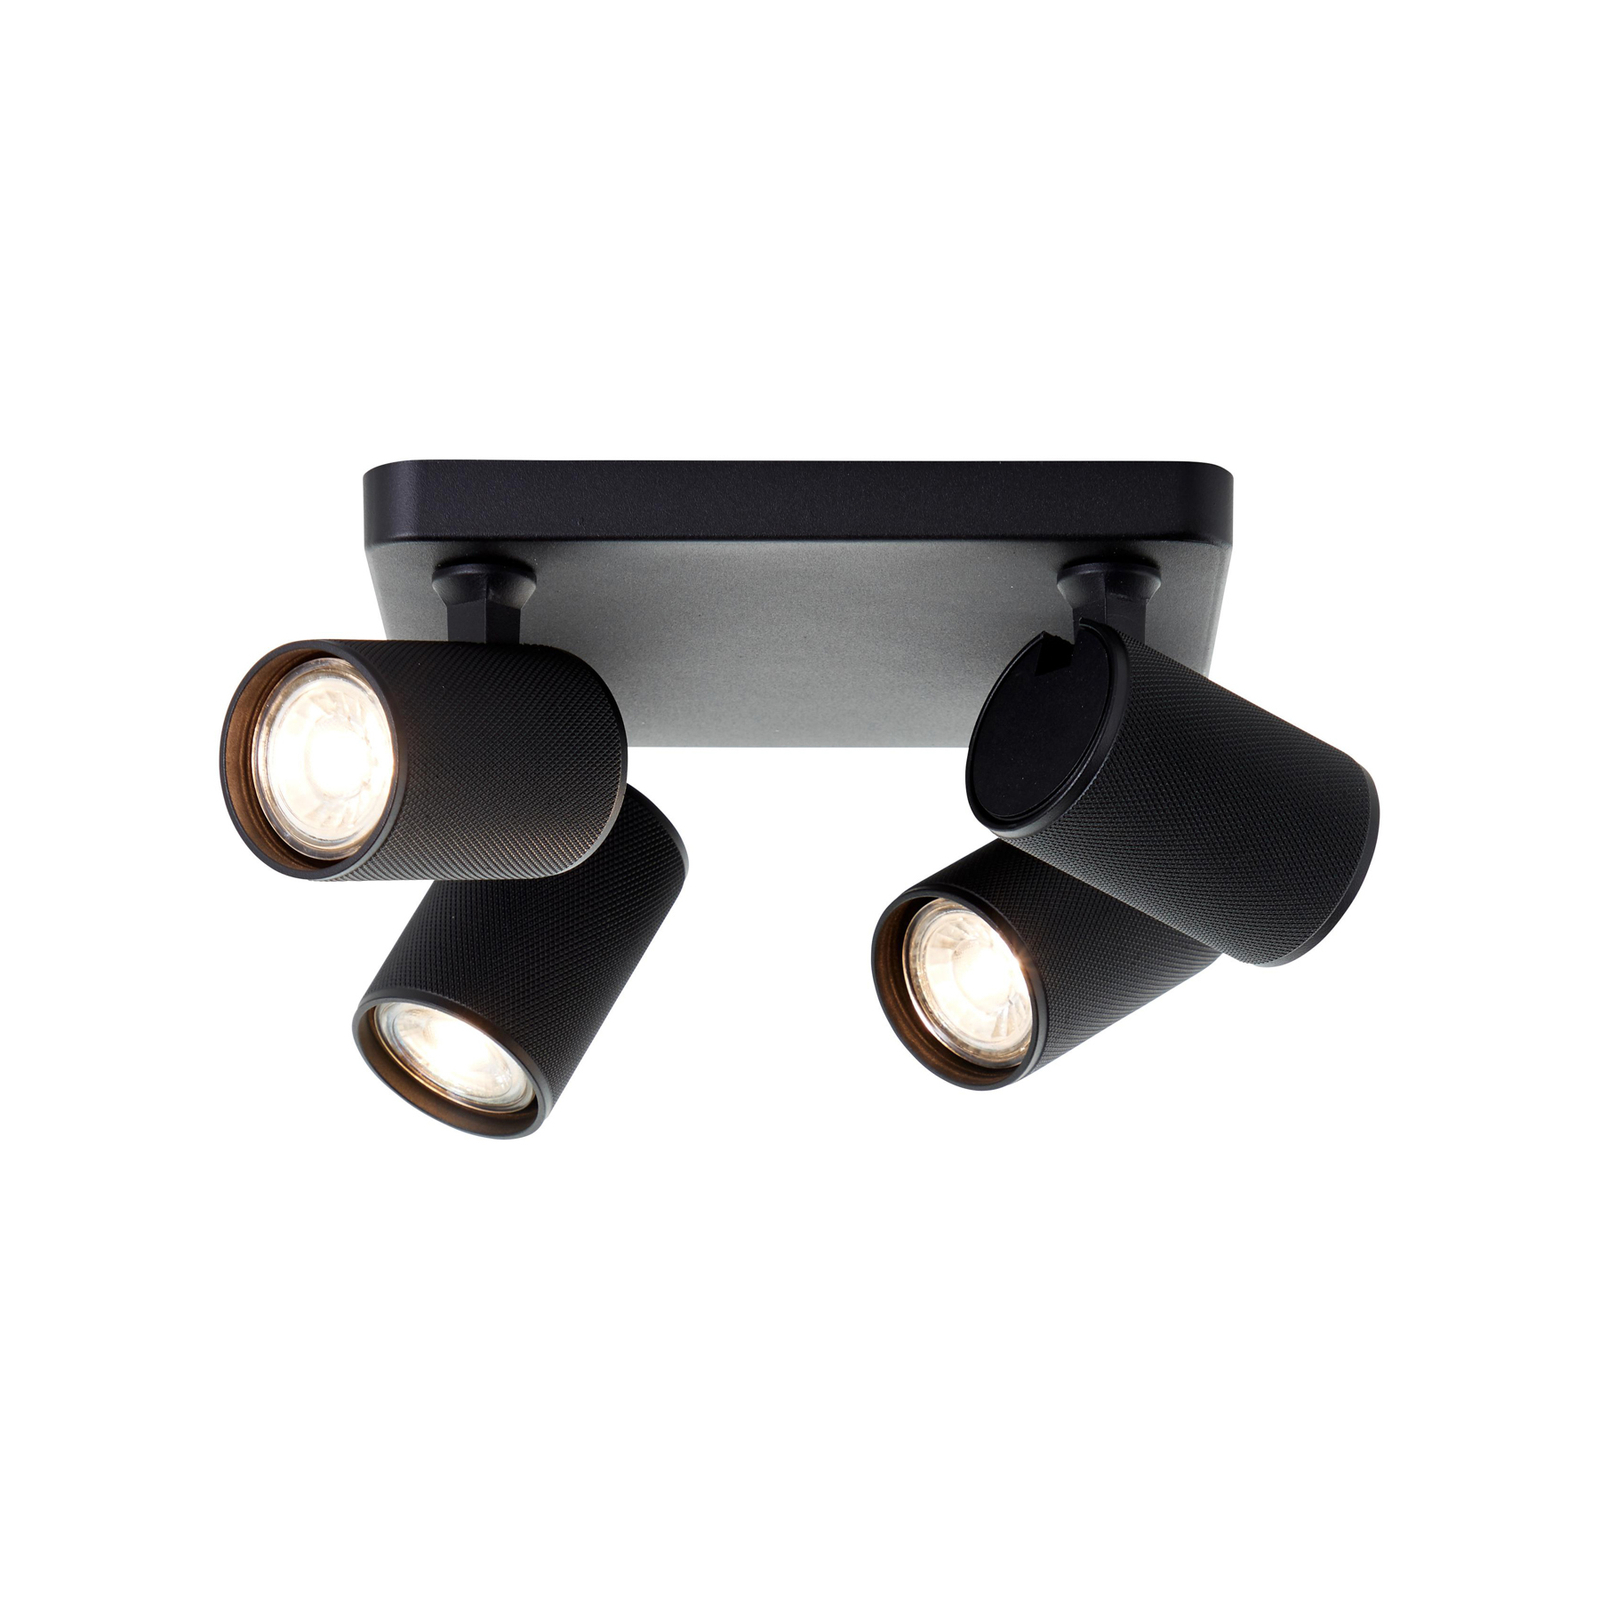 LED lubinis prožektorius Marty, 22 cm ilgio, smėlio juodos spalvos, 4